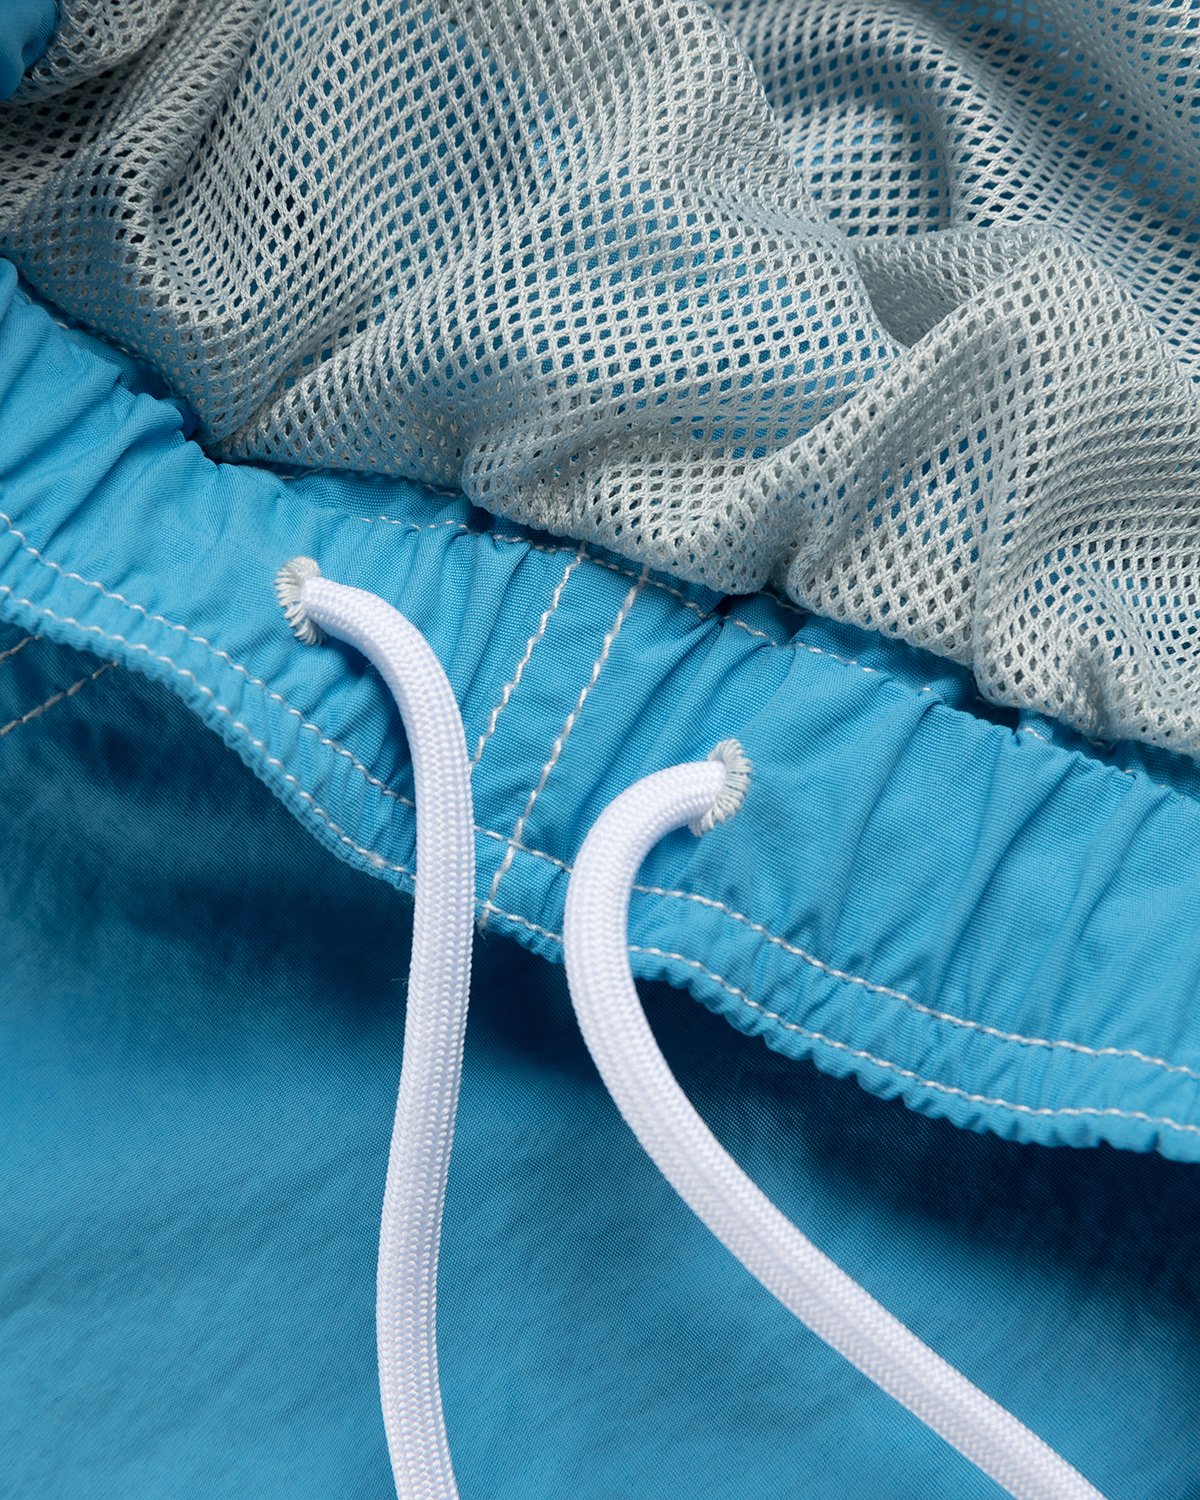 Highsnobiety - Contrast Brushed Nylon Water Shorts Blue - Clothing - Blue - Image 5